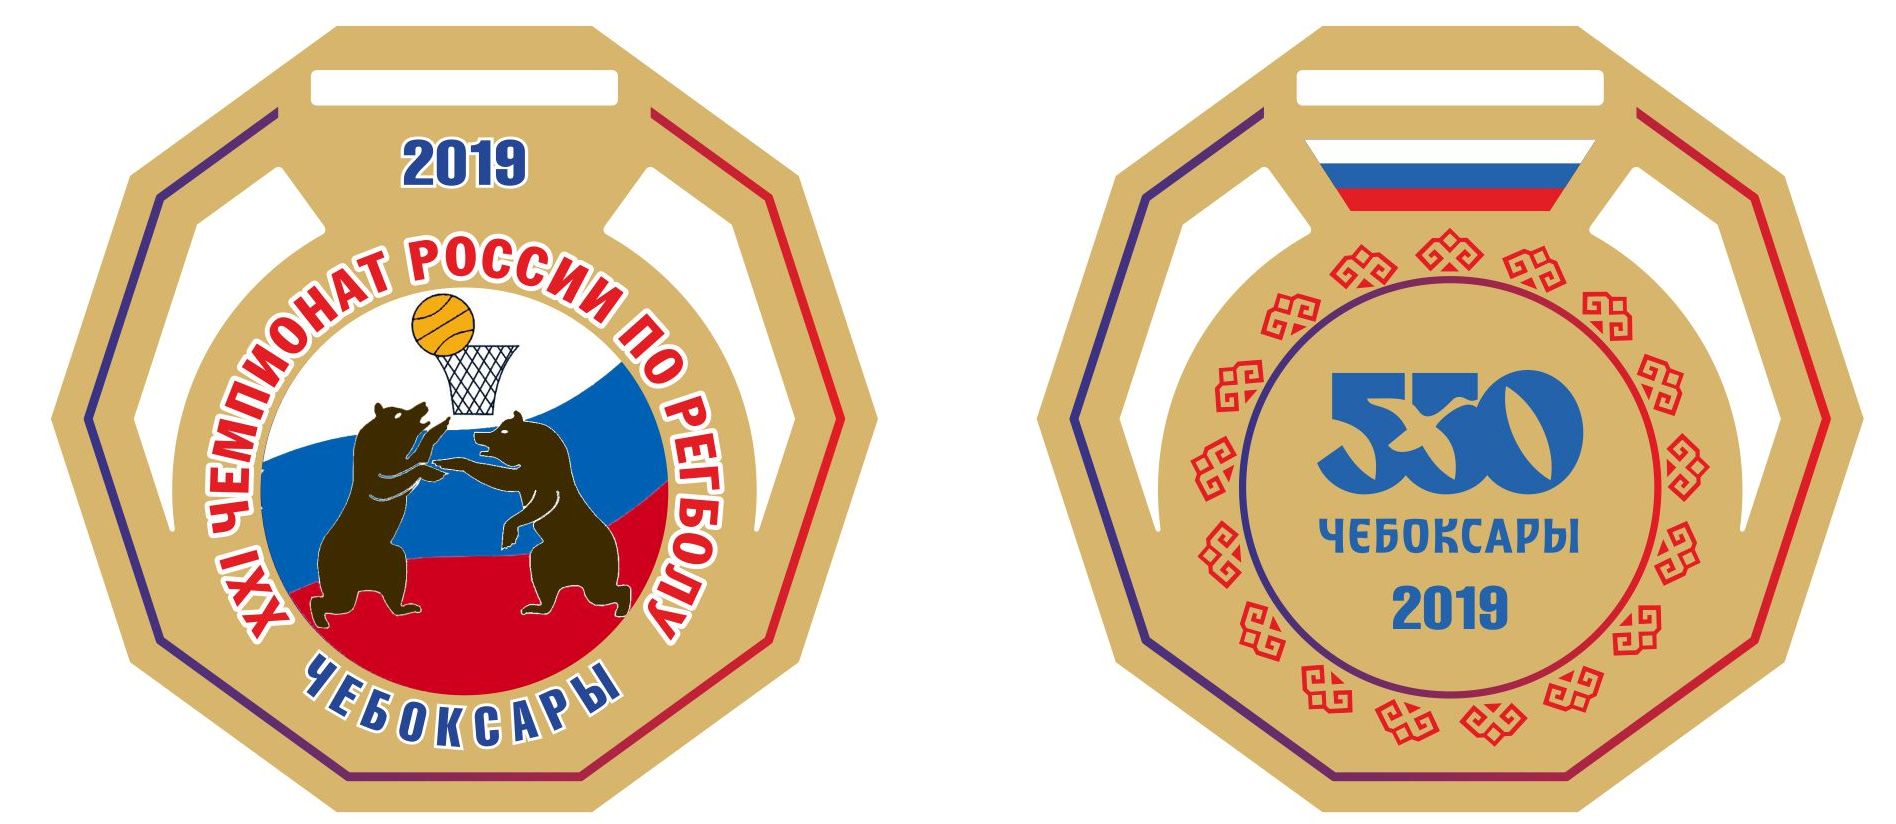 подарочные медали чемпионата россии по регболу 2019